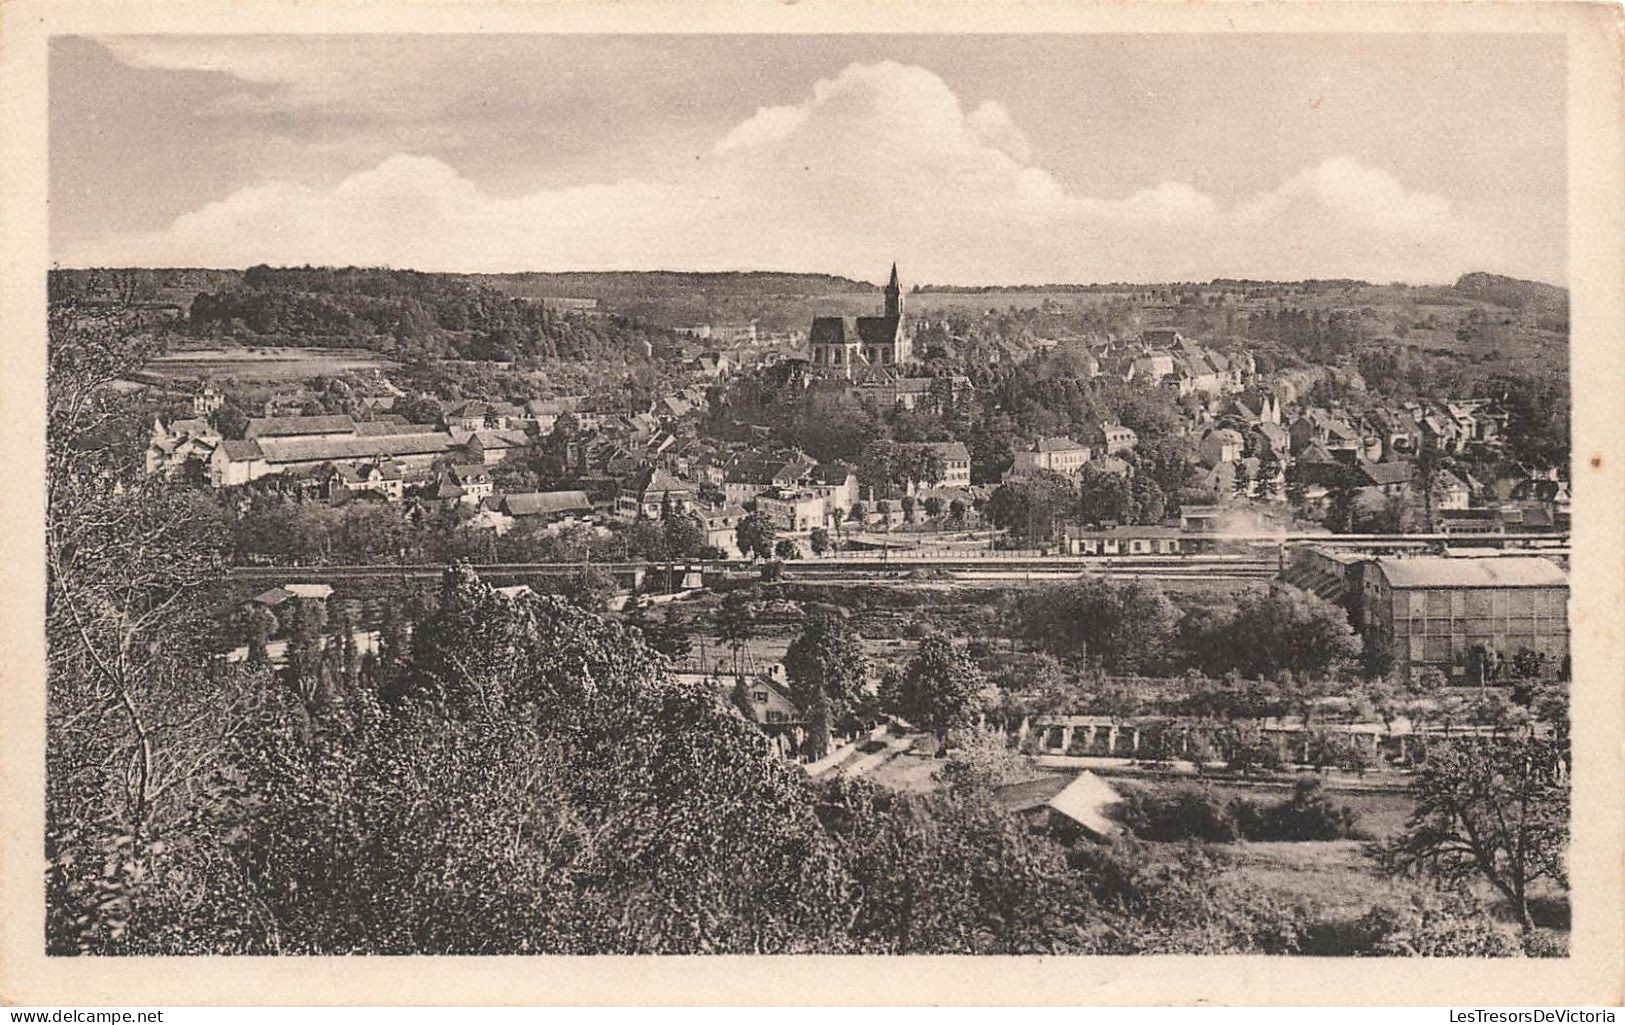 FRANCE - Altkirch - Vue Générale De La Ville - Carte Postale Ancienne - Altkirch